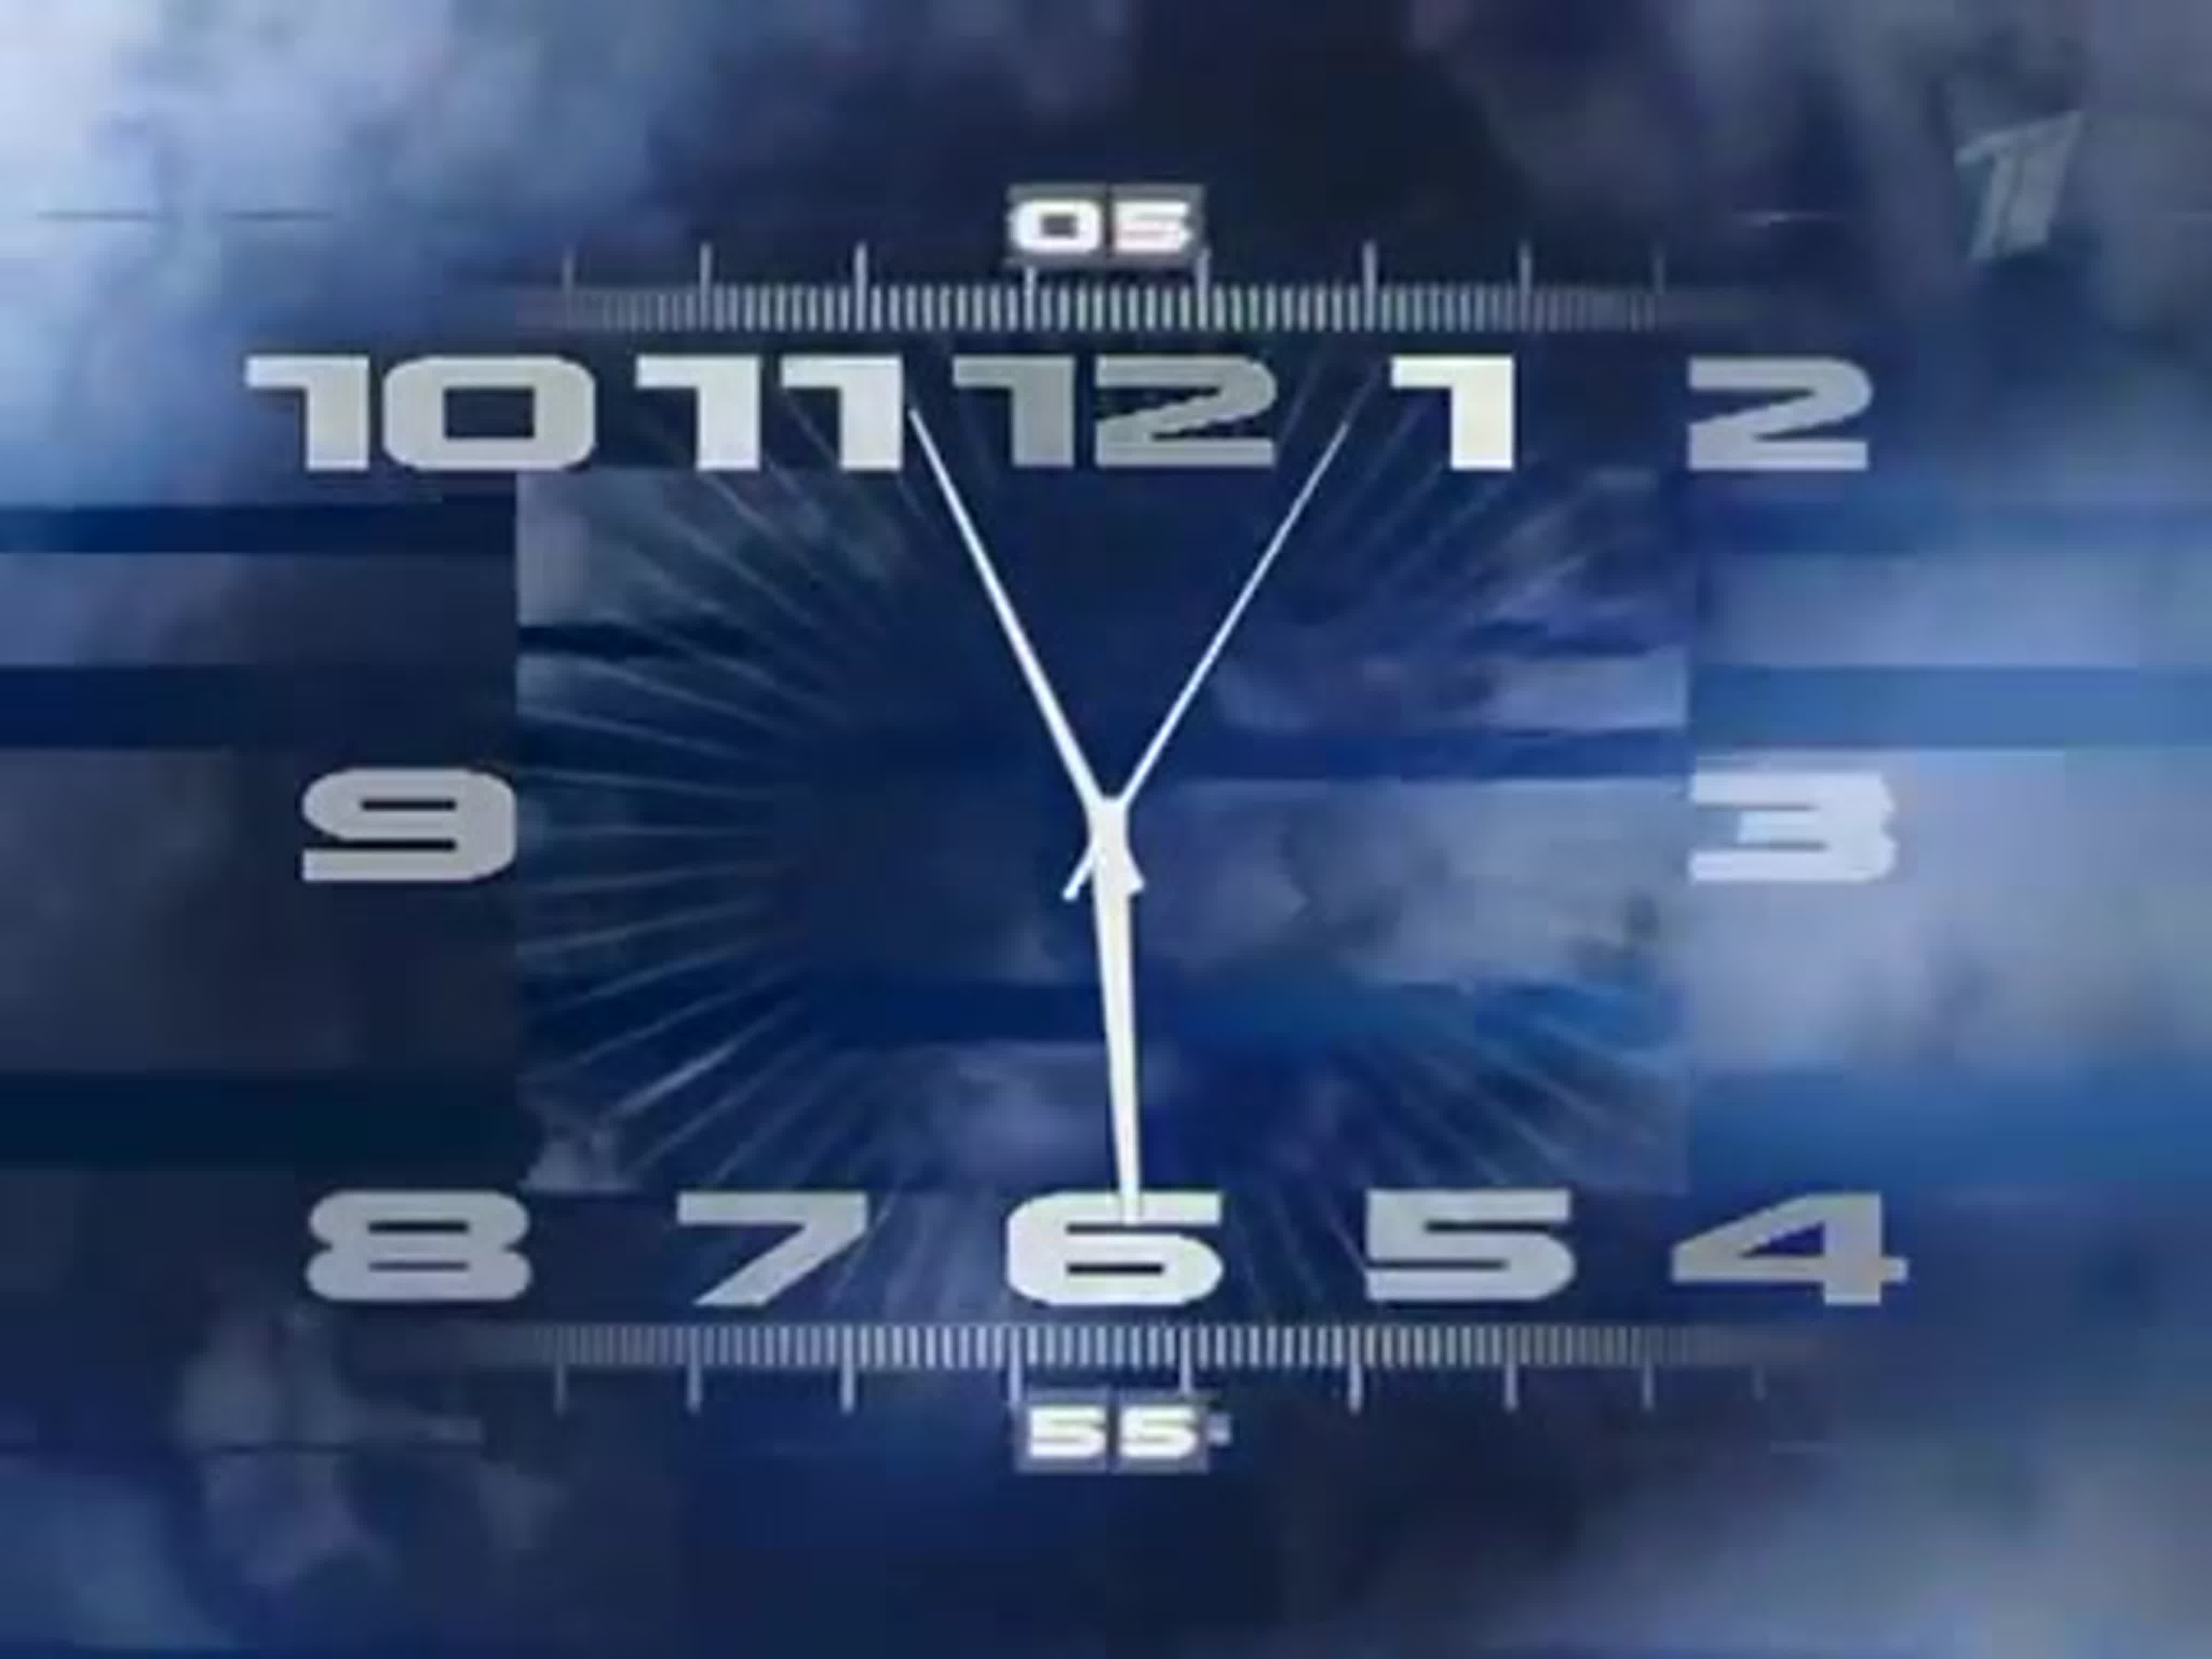 Песня звук часов. Часы первого канала 2011. Часы ТВС со звуком часов 1 канала. Часы первого канала 2000-2011. Часы первого канала оригинал.